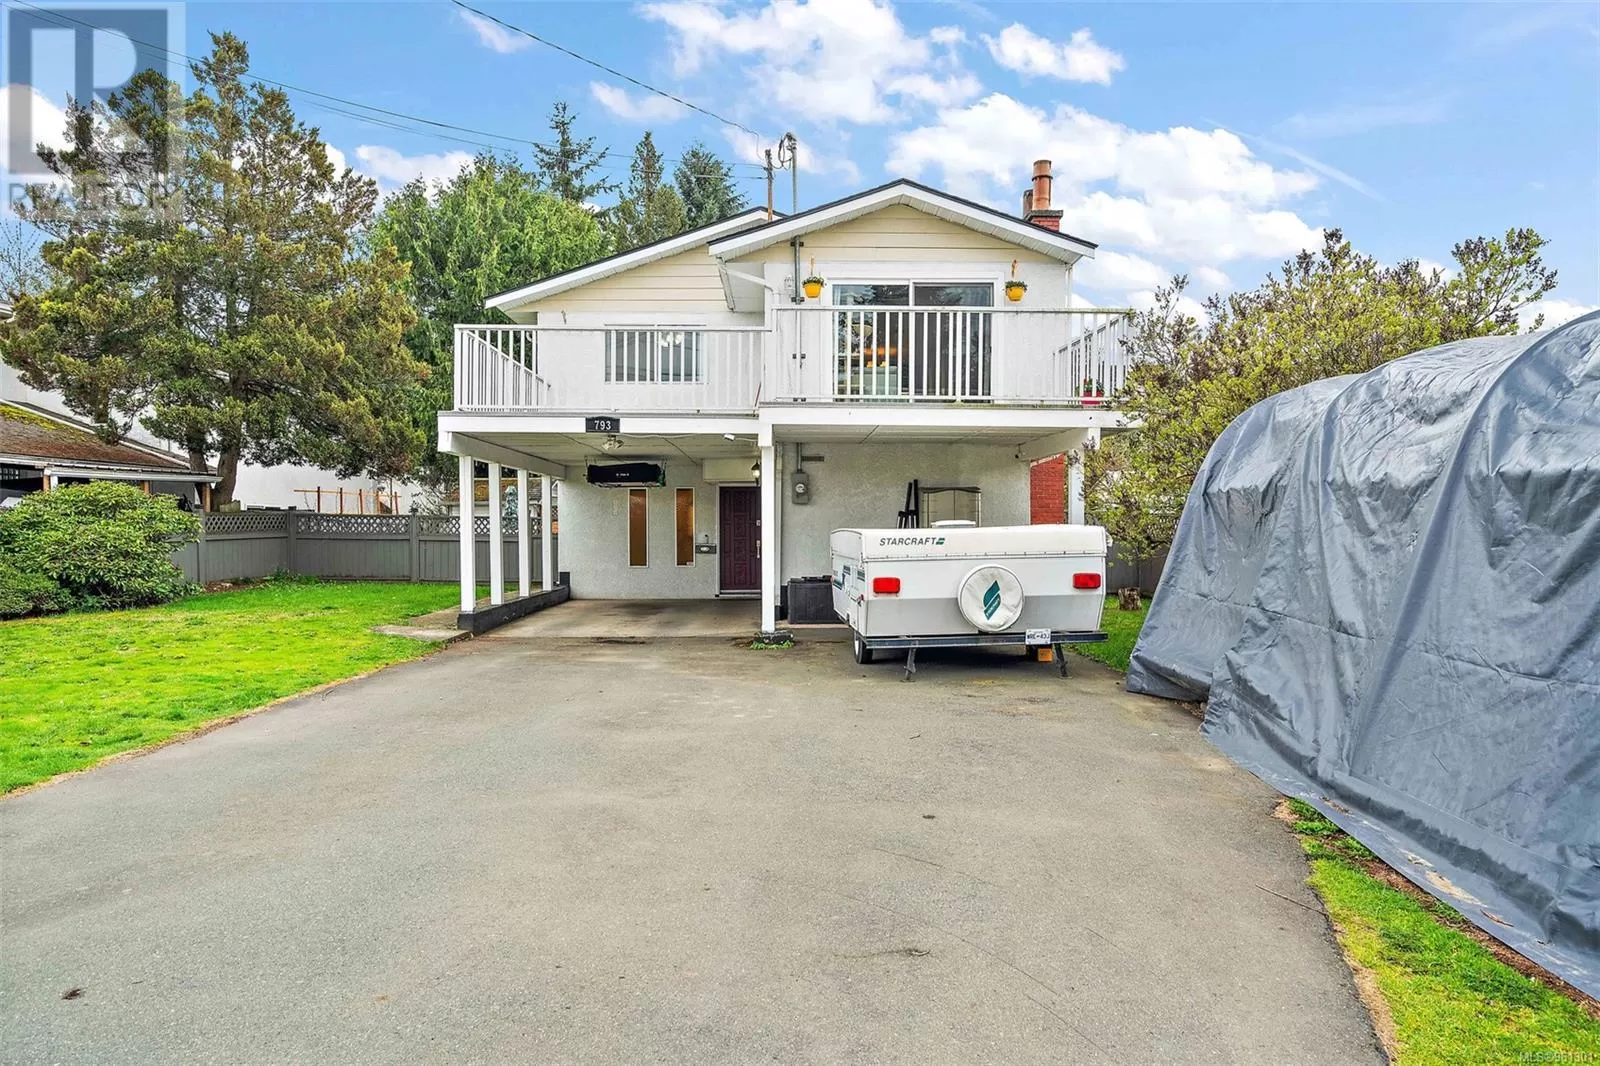 House for rent: 793 Arncote Ave, Langford, British Columbia V9B 3E4